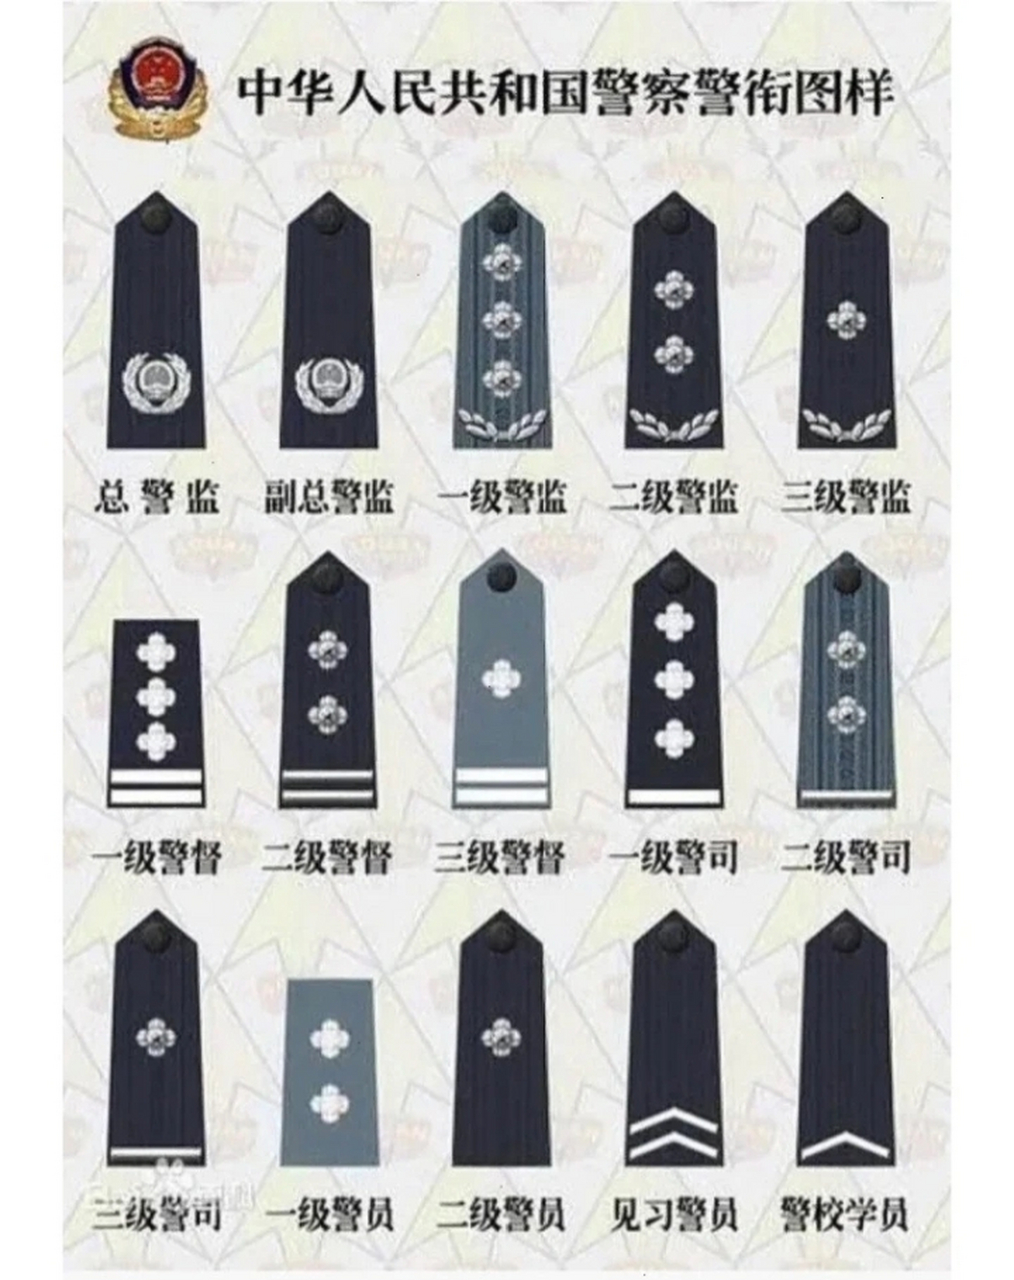 台湾警衔等级与职位图图片